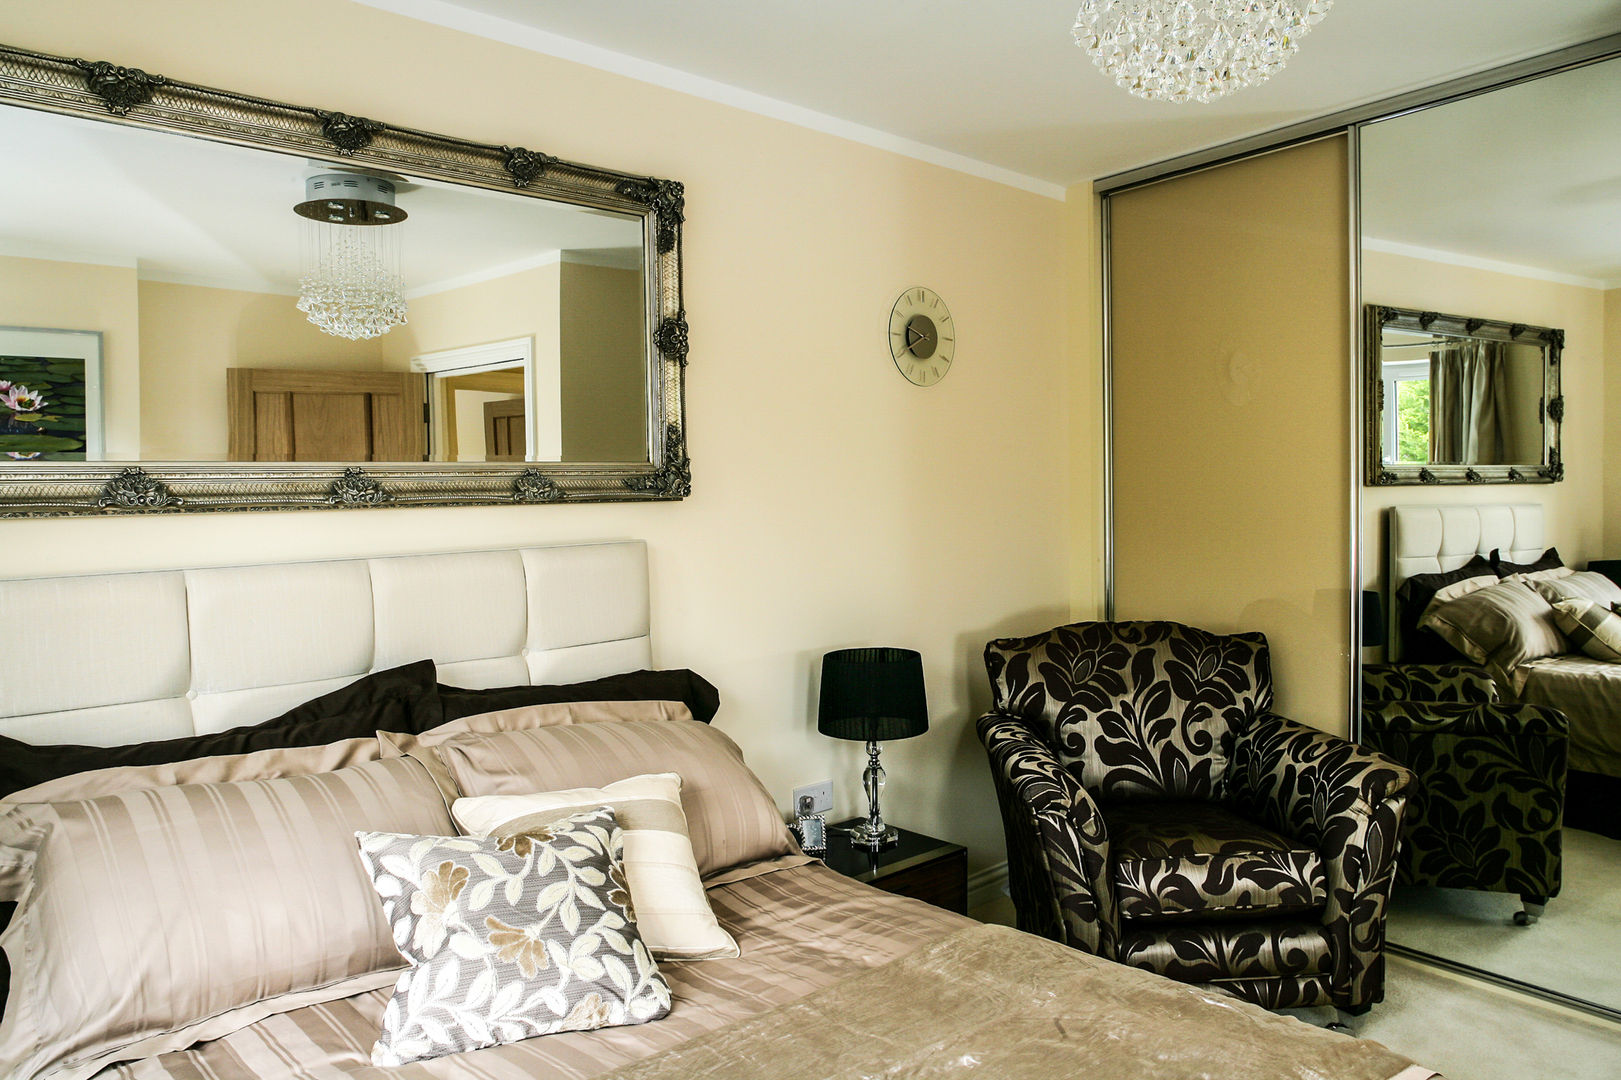 Bedroom Lujansphotography Habitaciones modernas